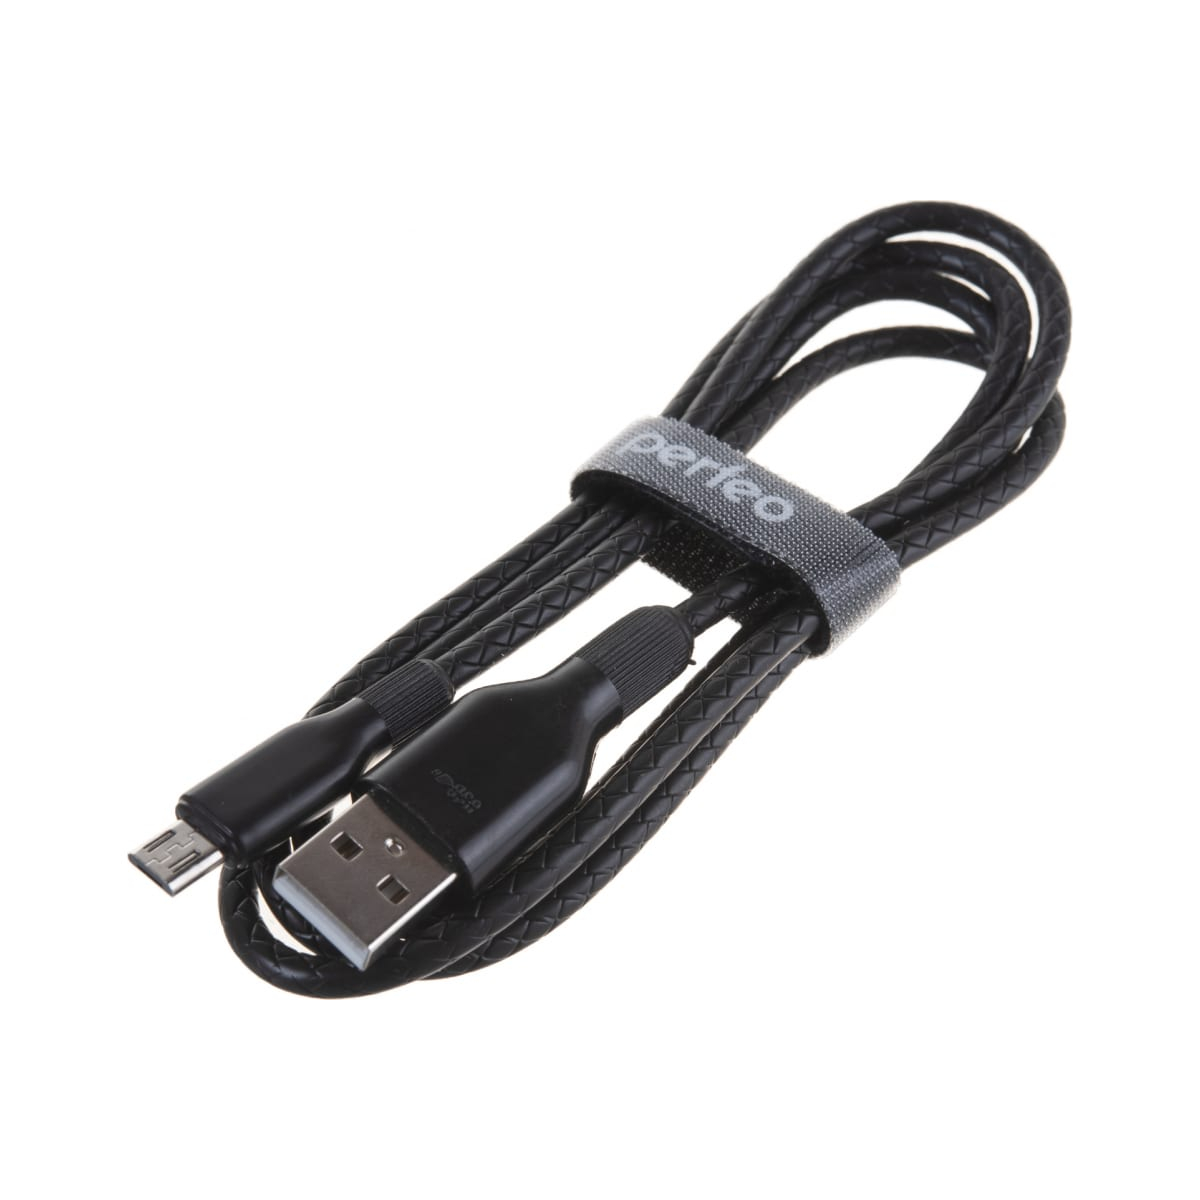 Кабель Perfeo U4807 USB 2.0 A вилка - Micro USB вилка 1 м black, цвет черный - фото 1